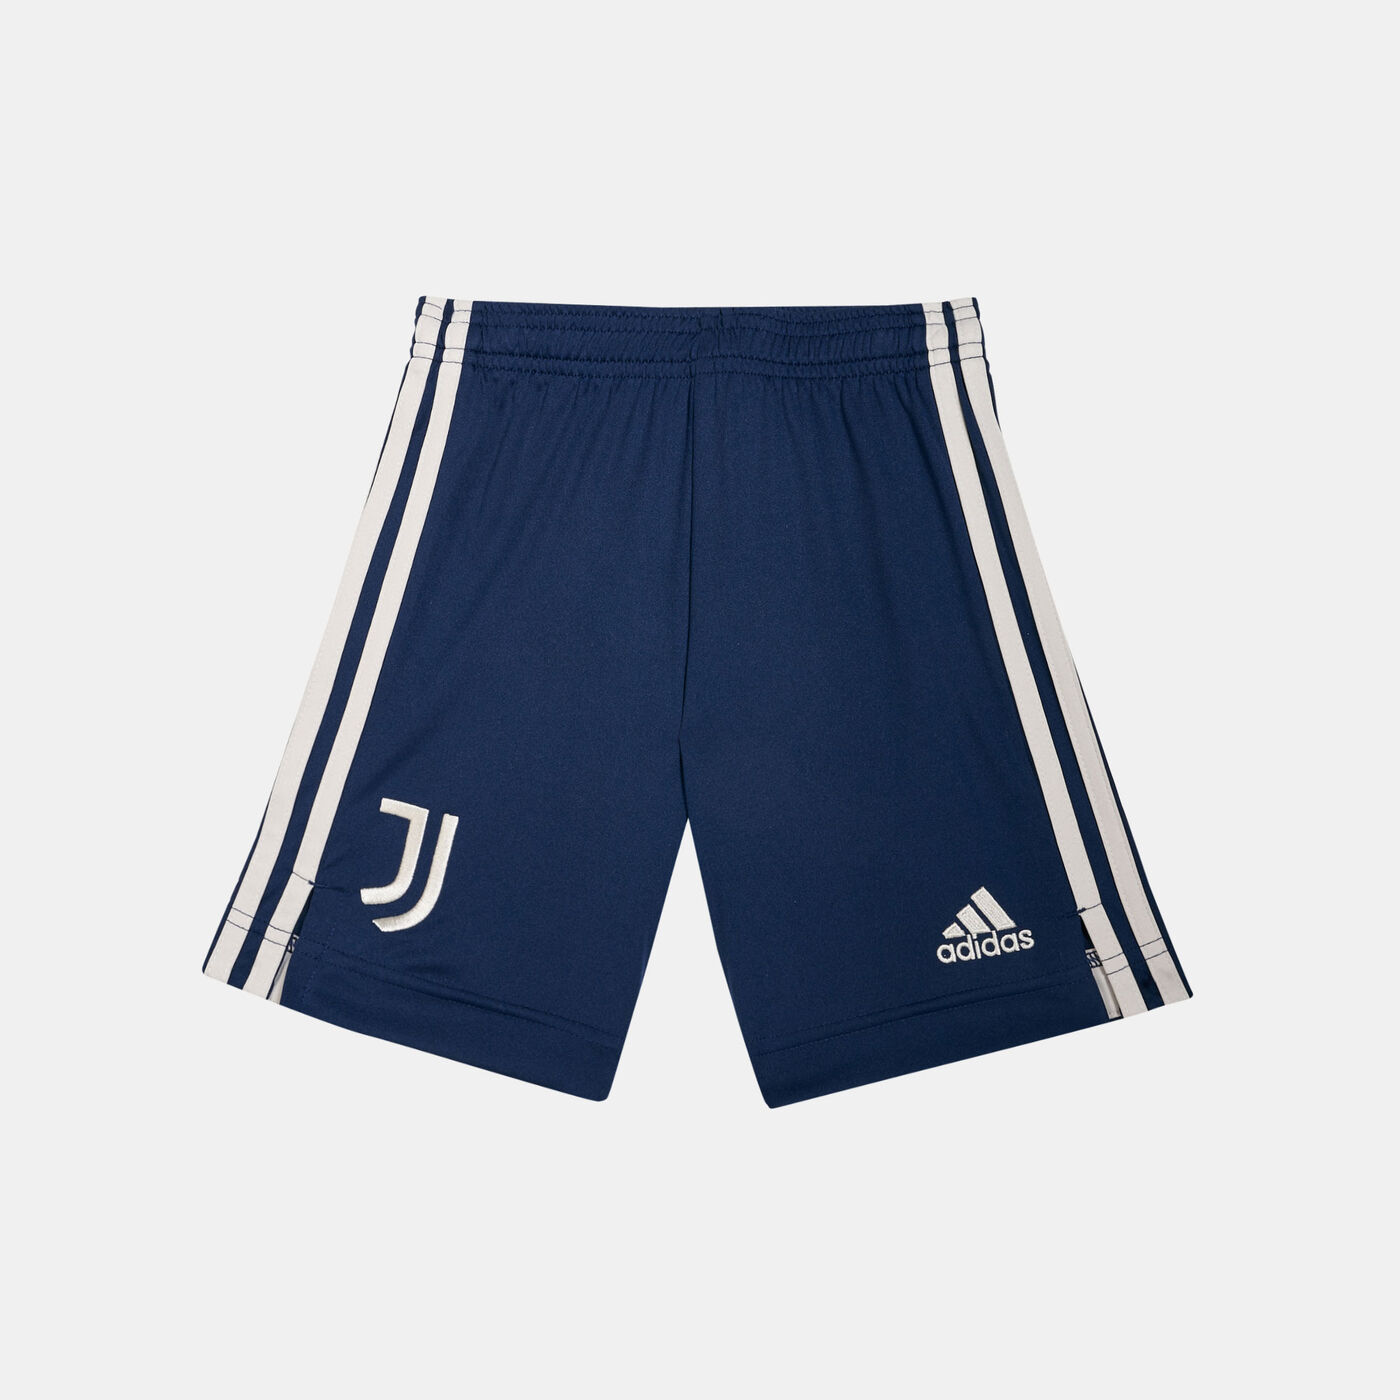 Kids' Juventus Away Shorts (Older Kids) - 2020/21